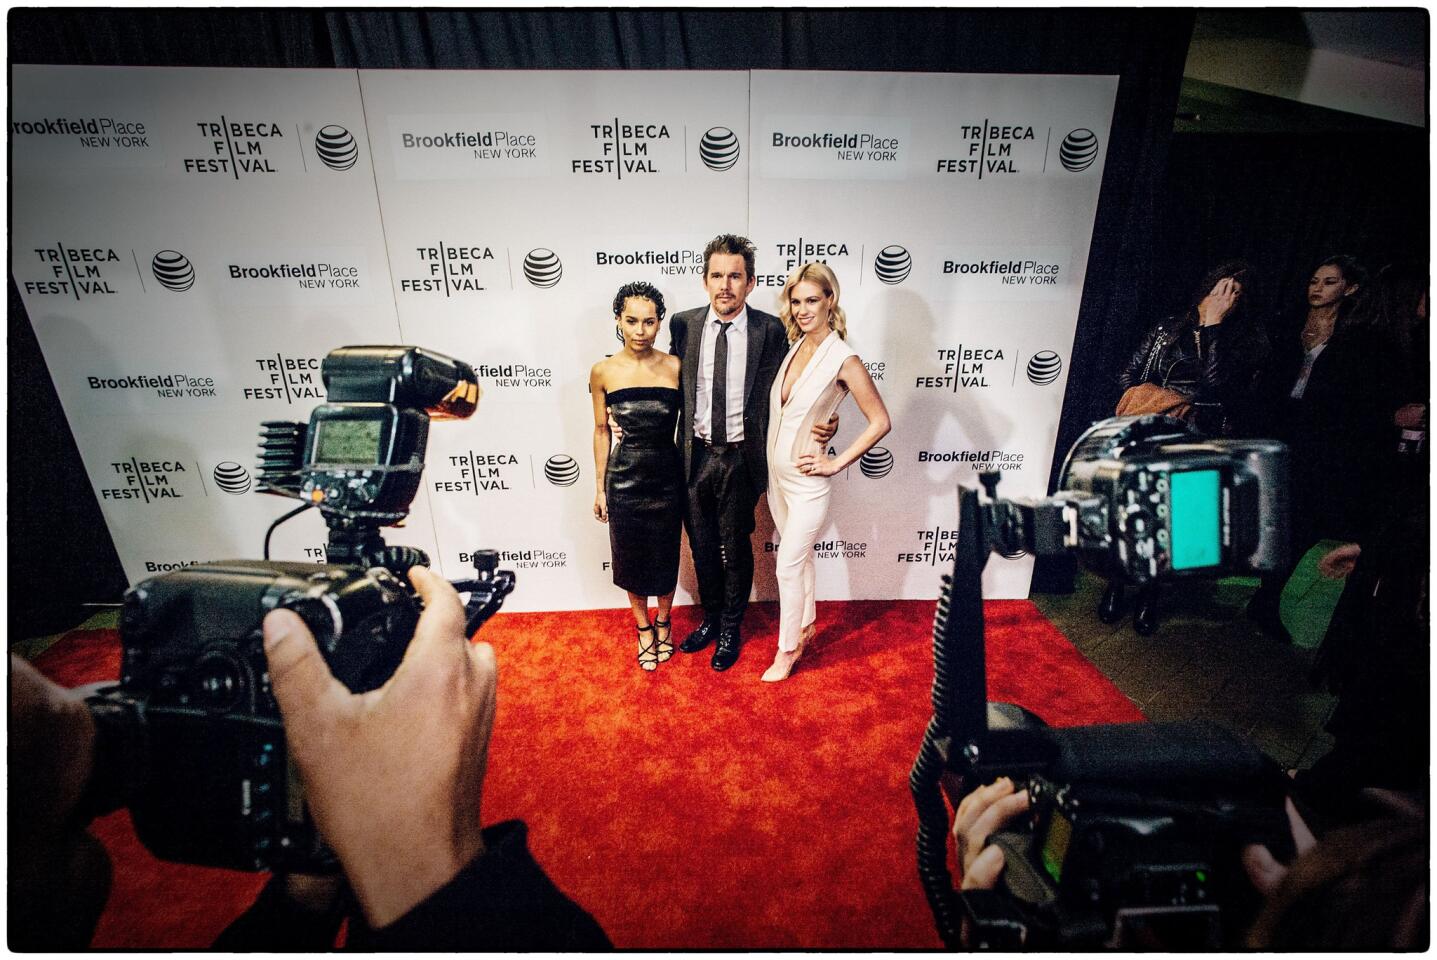 Tribeca Film Festival 2015 | The scene